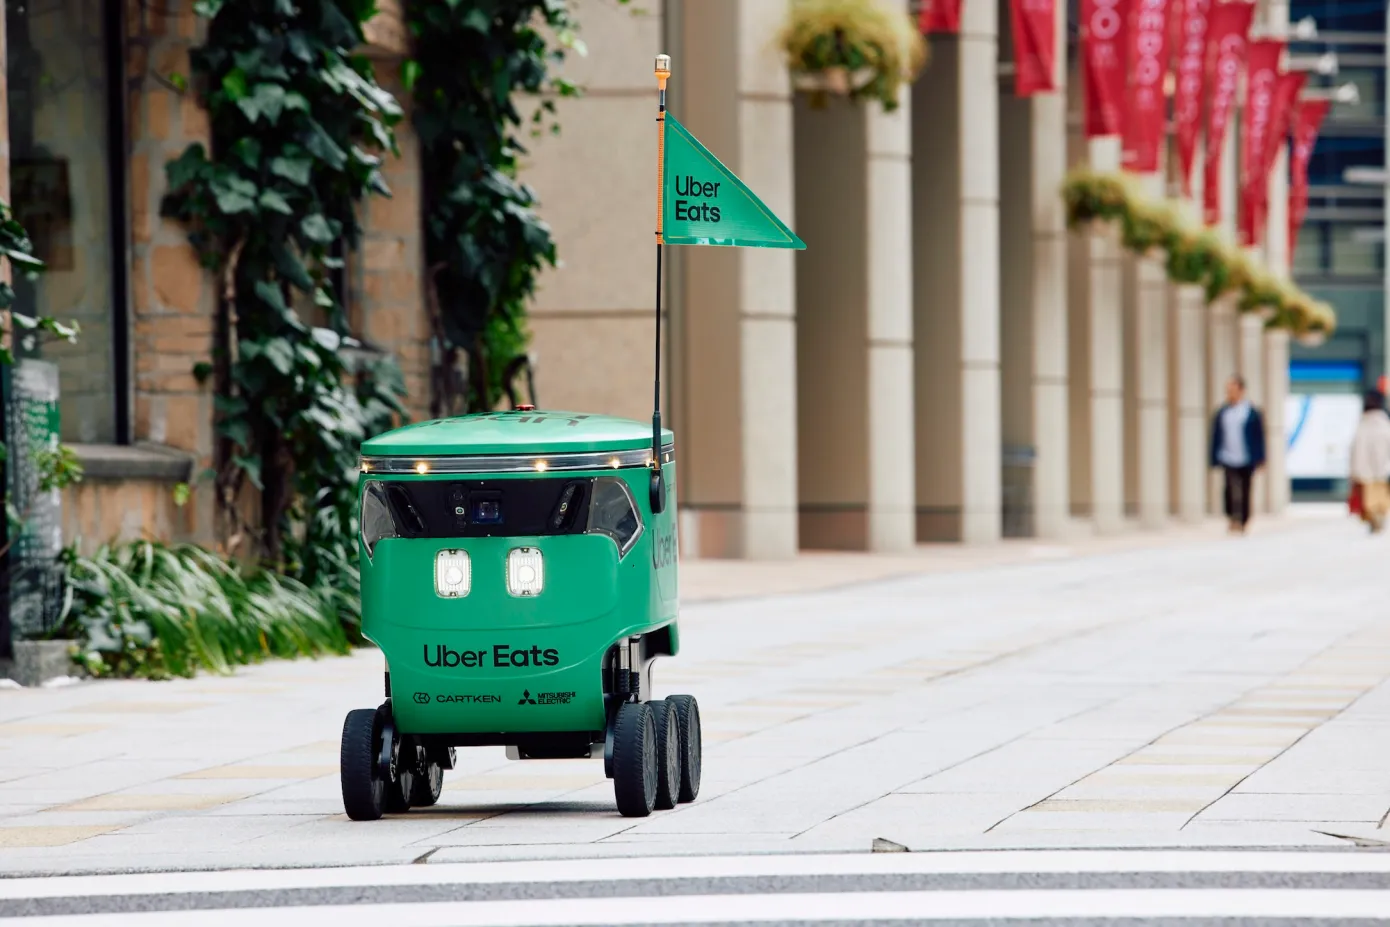 Uber Eats lança serviço de entrega com os robôs de calçada em parceria com startup